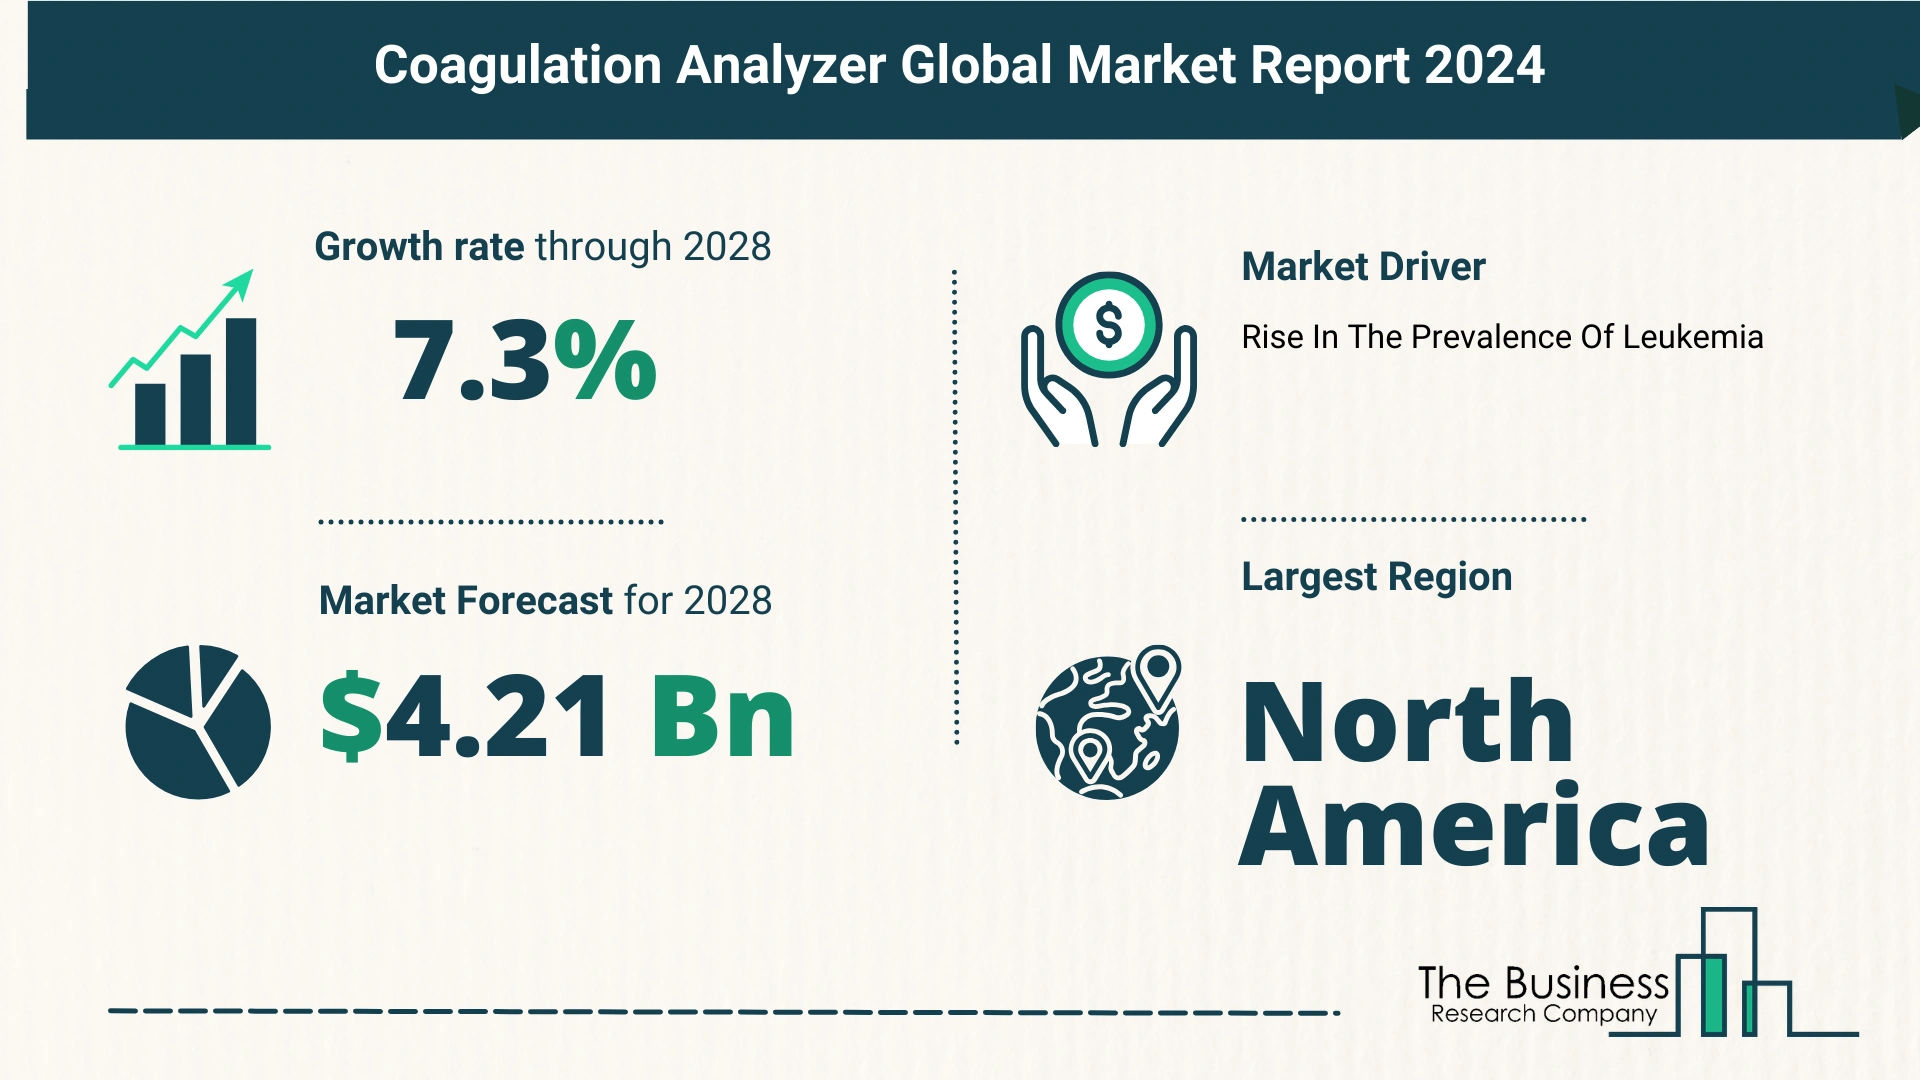 Global Coagulation Analyzer Market Size